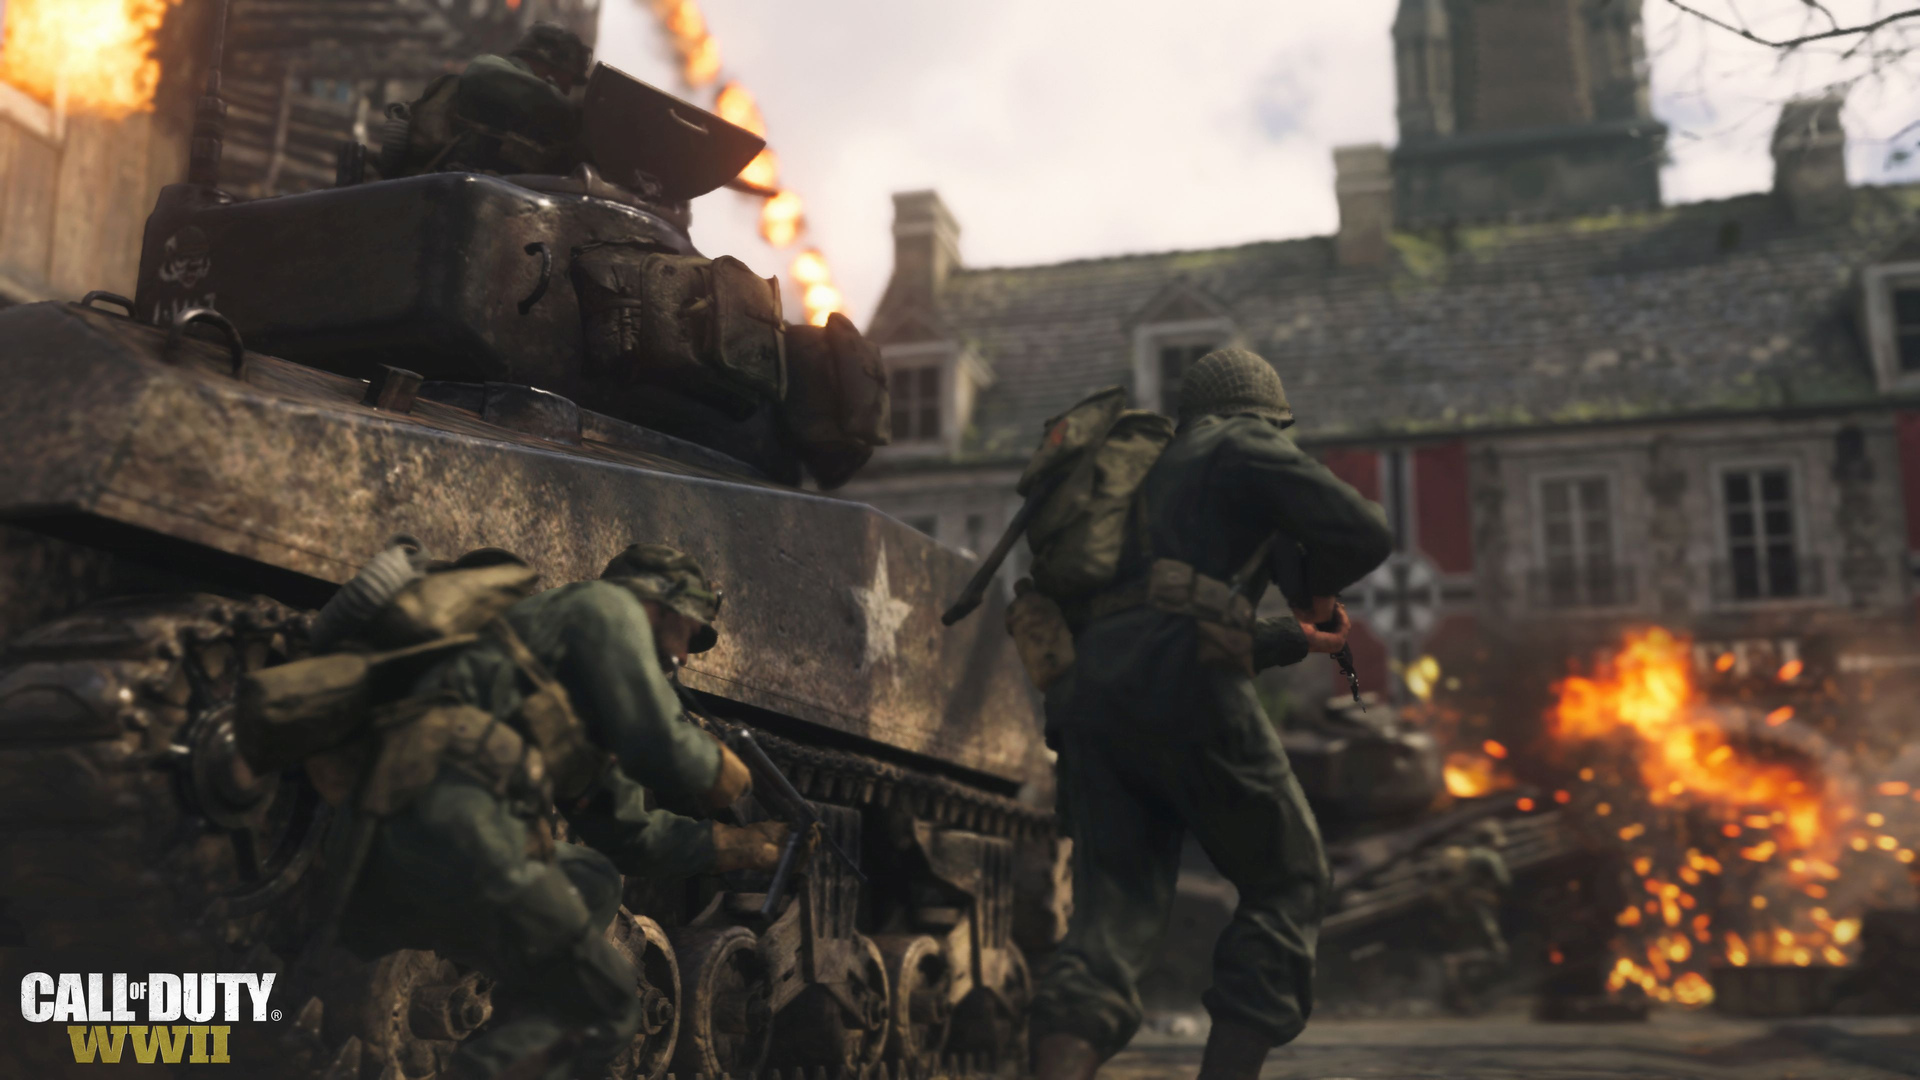 Call of Duty: WWII - vše, co byste měli vědět, na jednom místě 146070